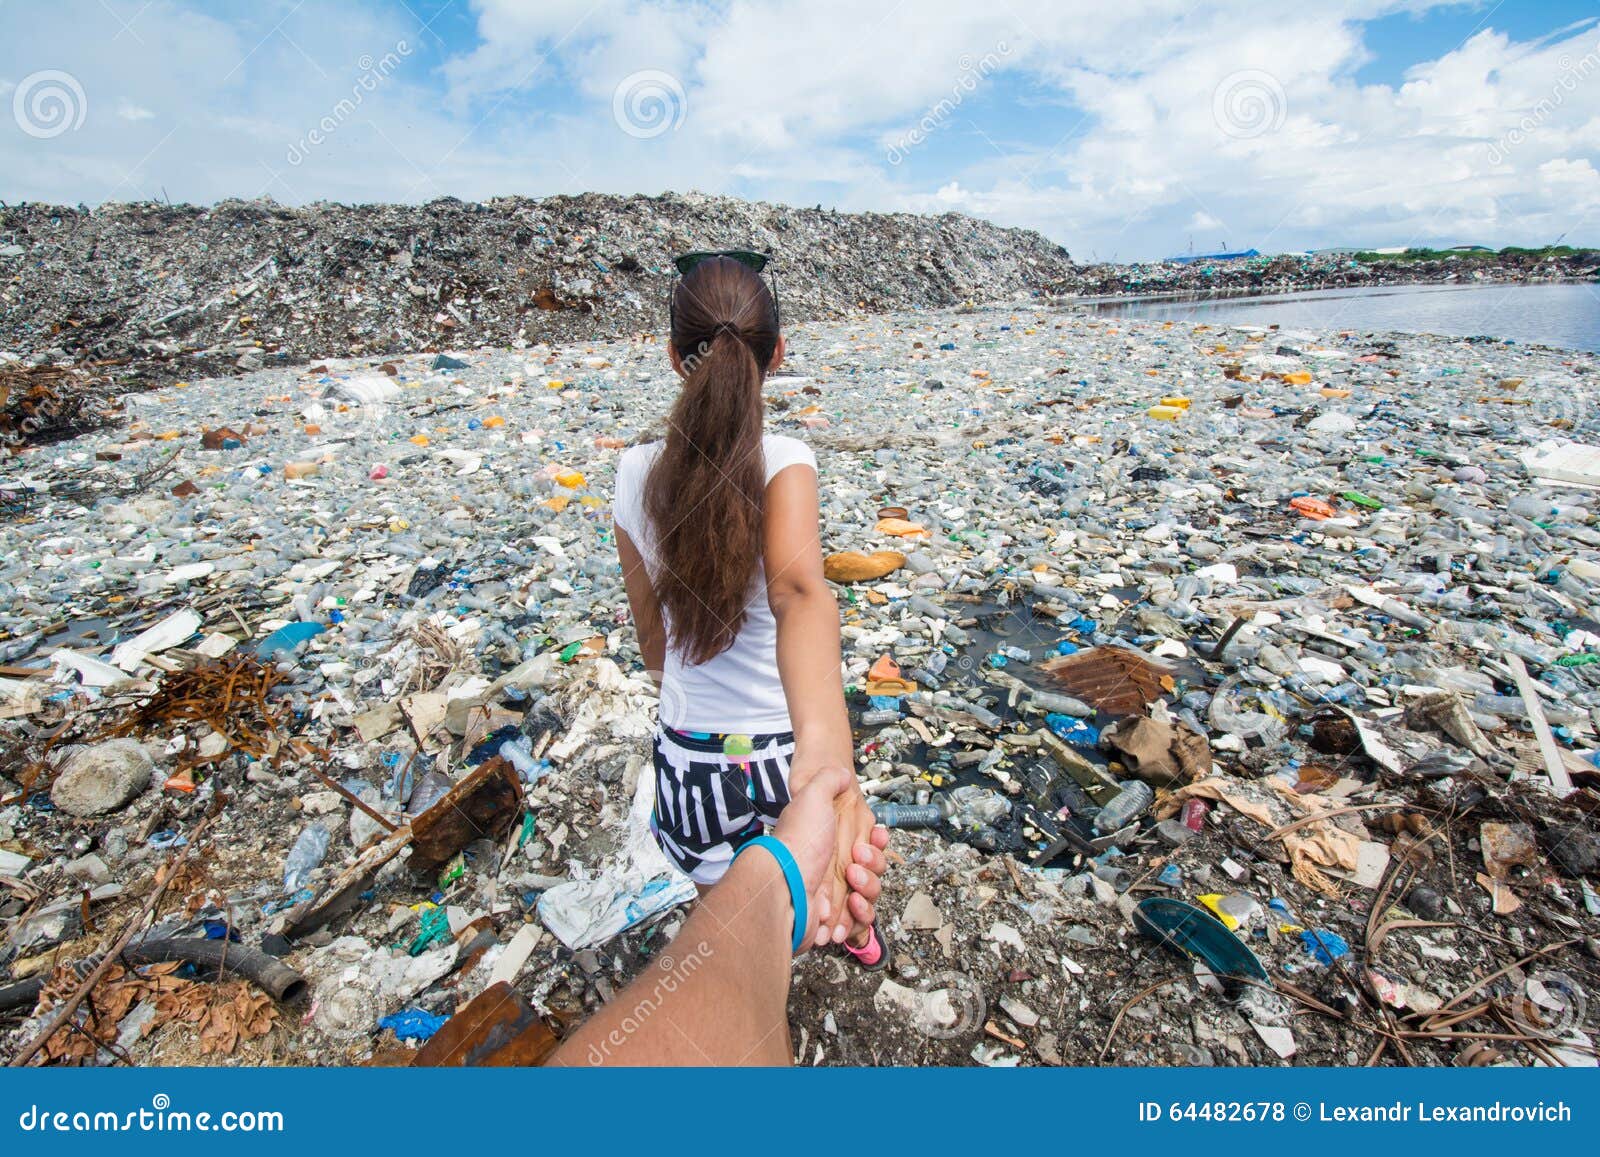 Suivez-moi version à la décharge de déchets maldives